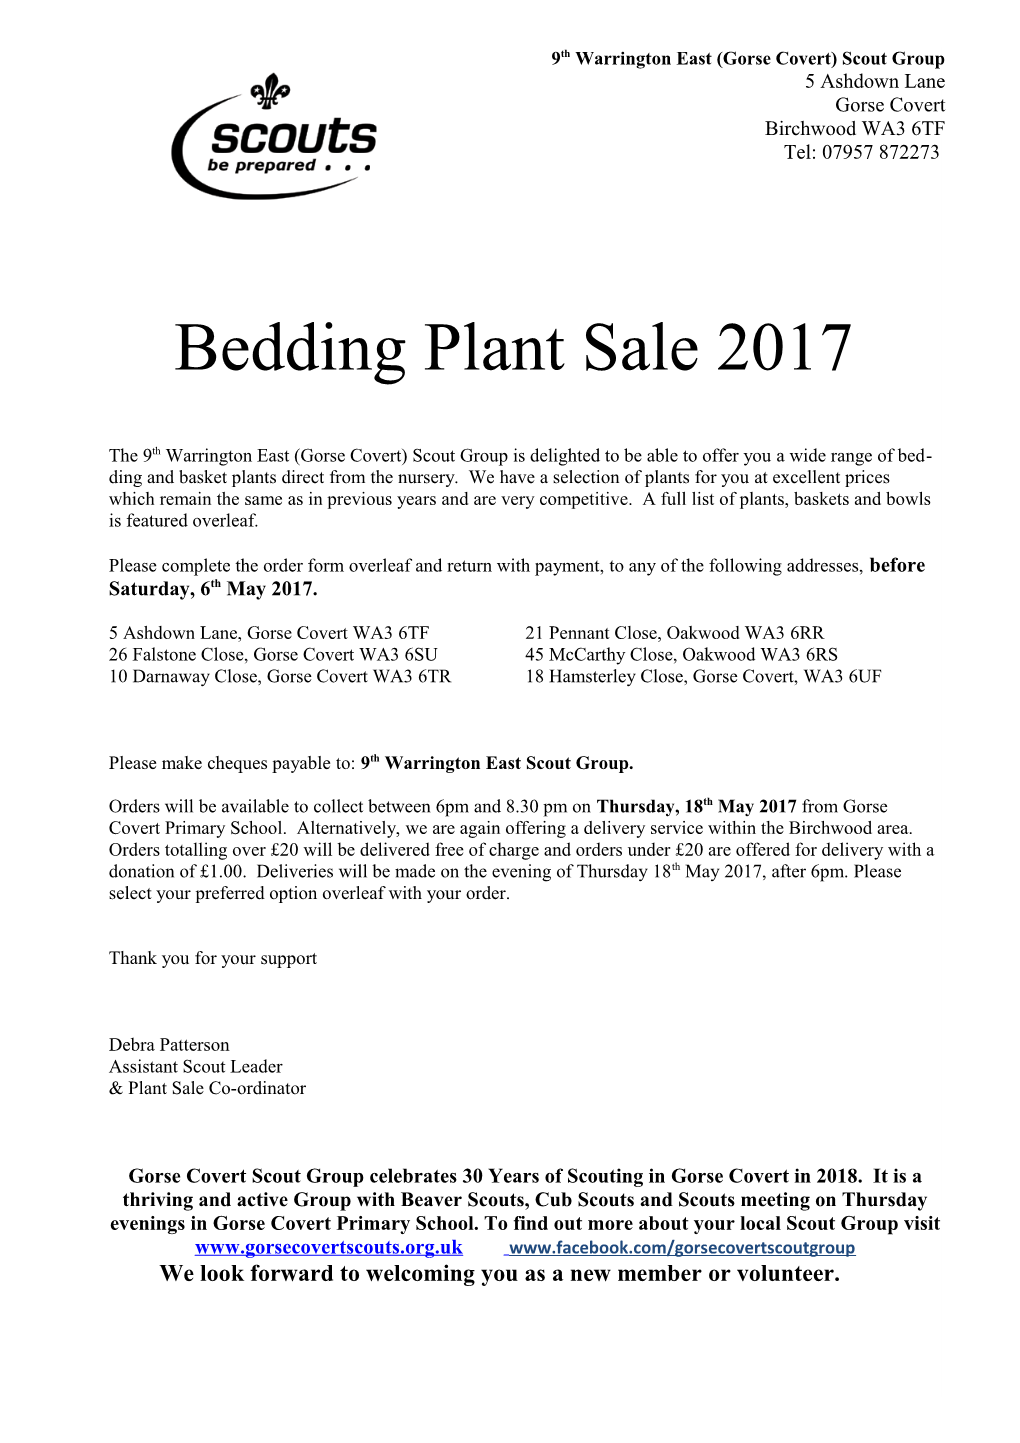 Bedding Plant Sale 2017